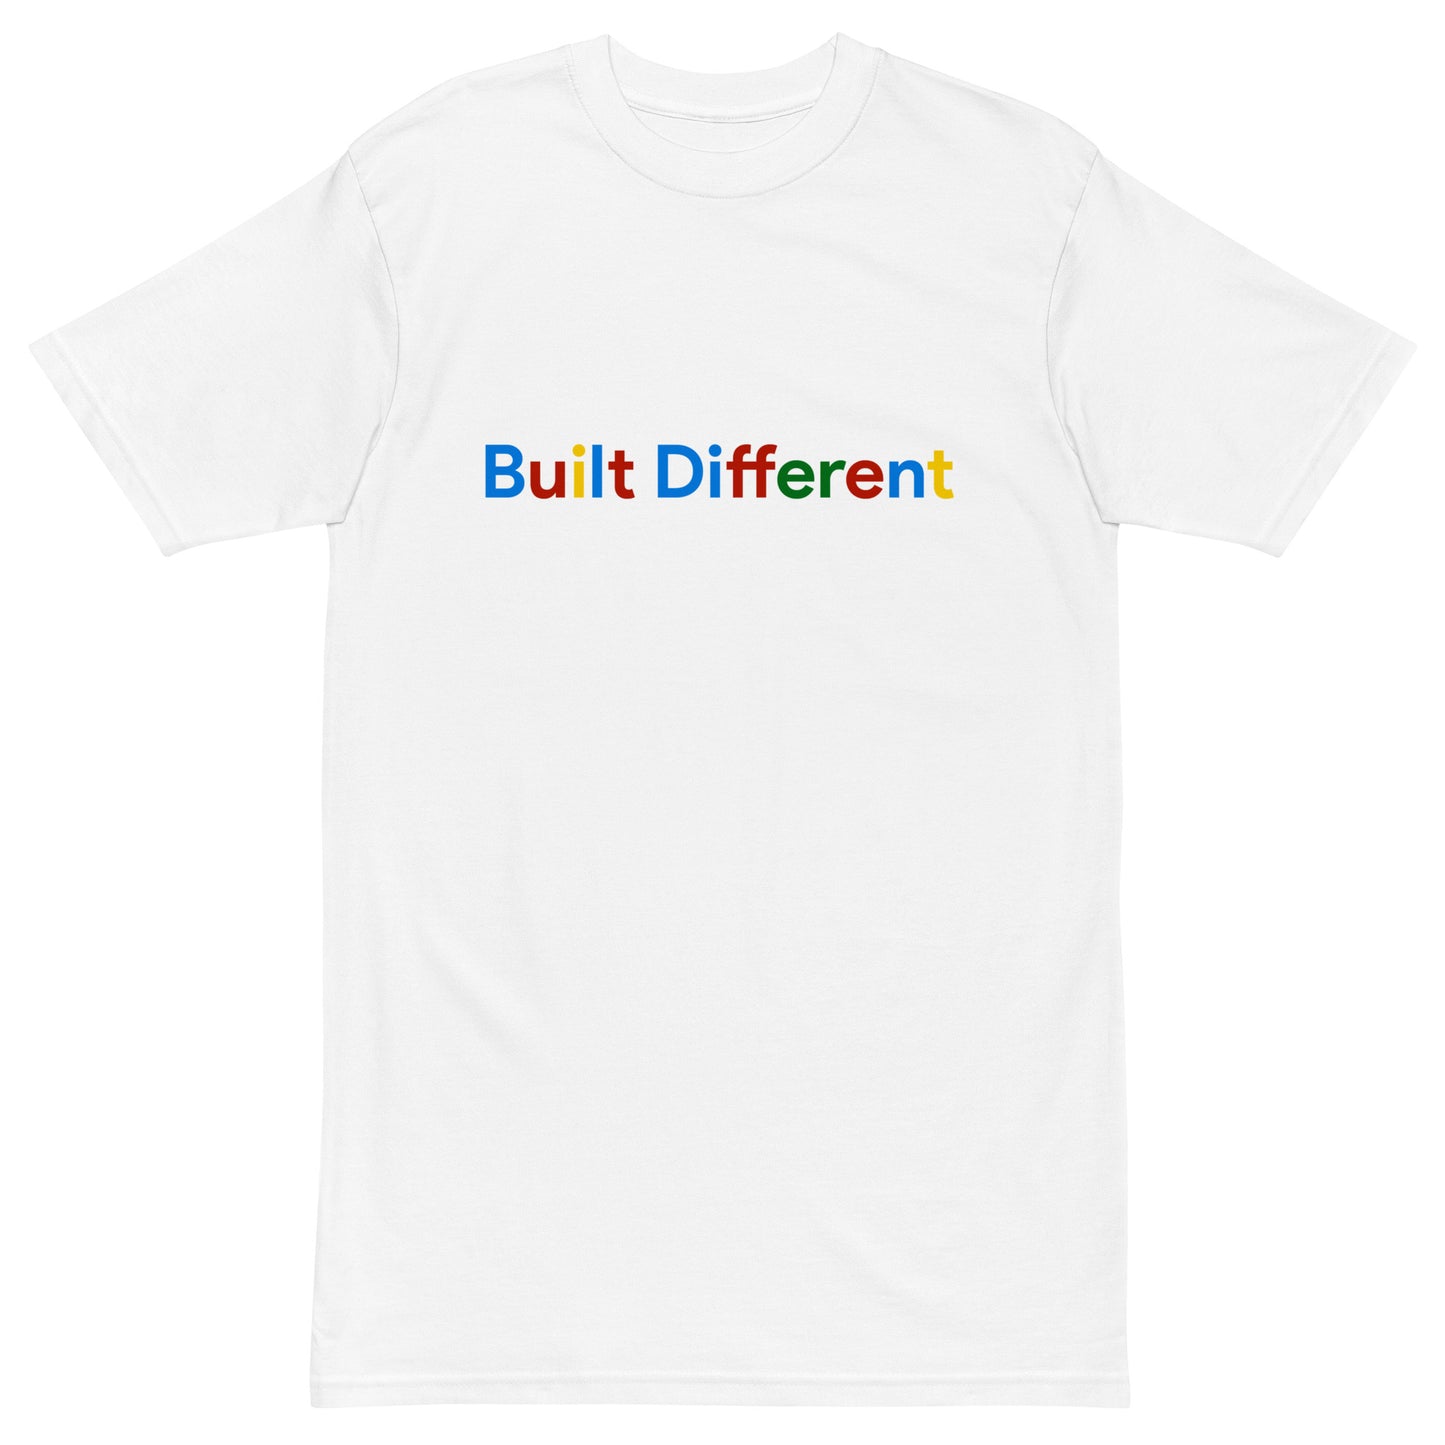 Built Different Shirt